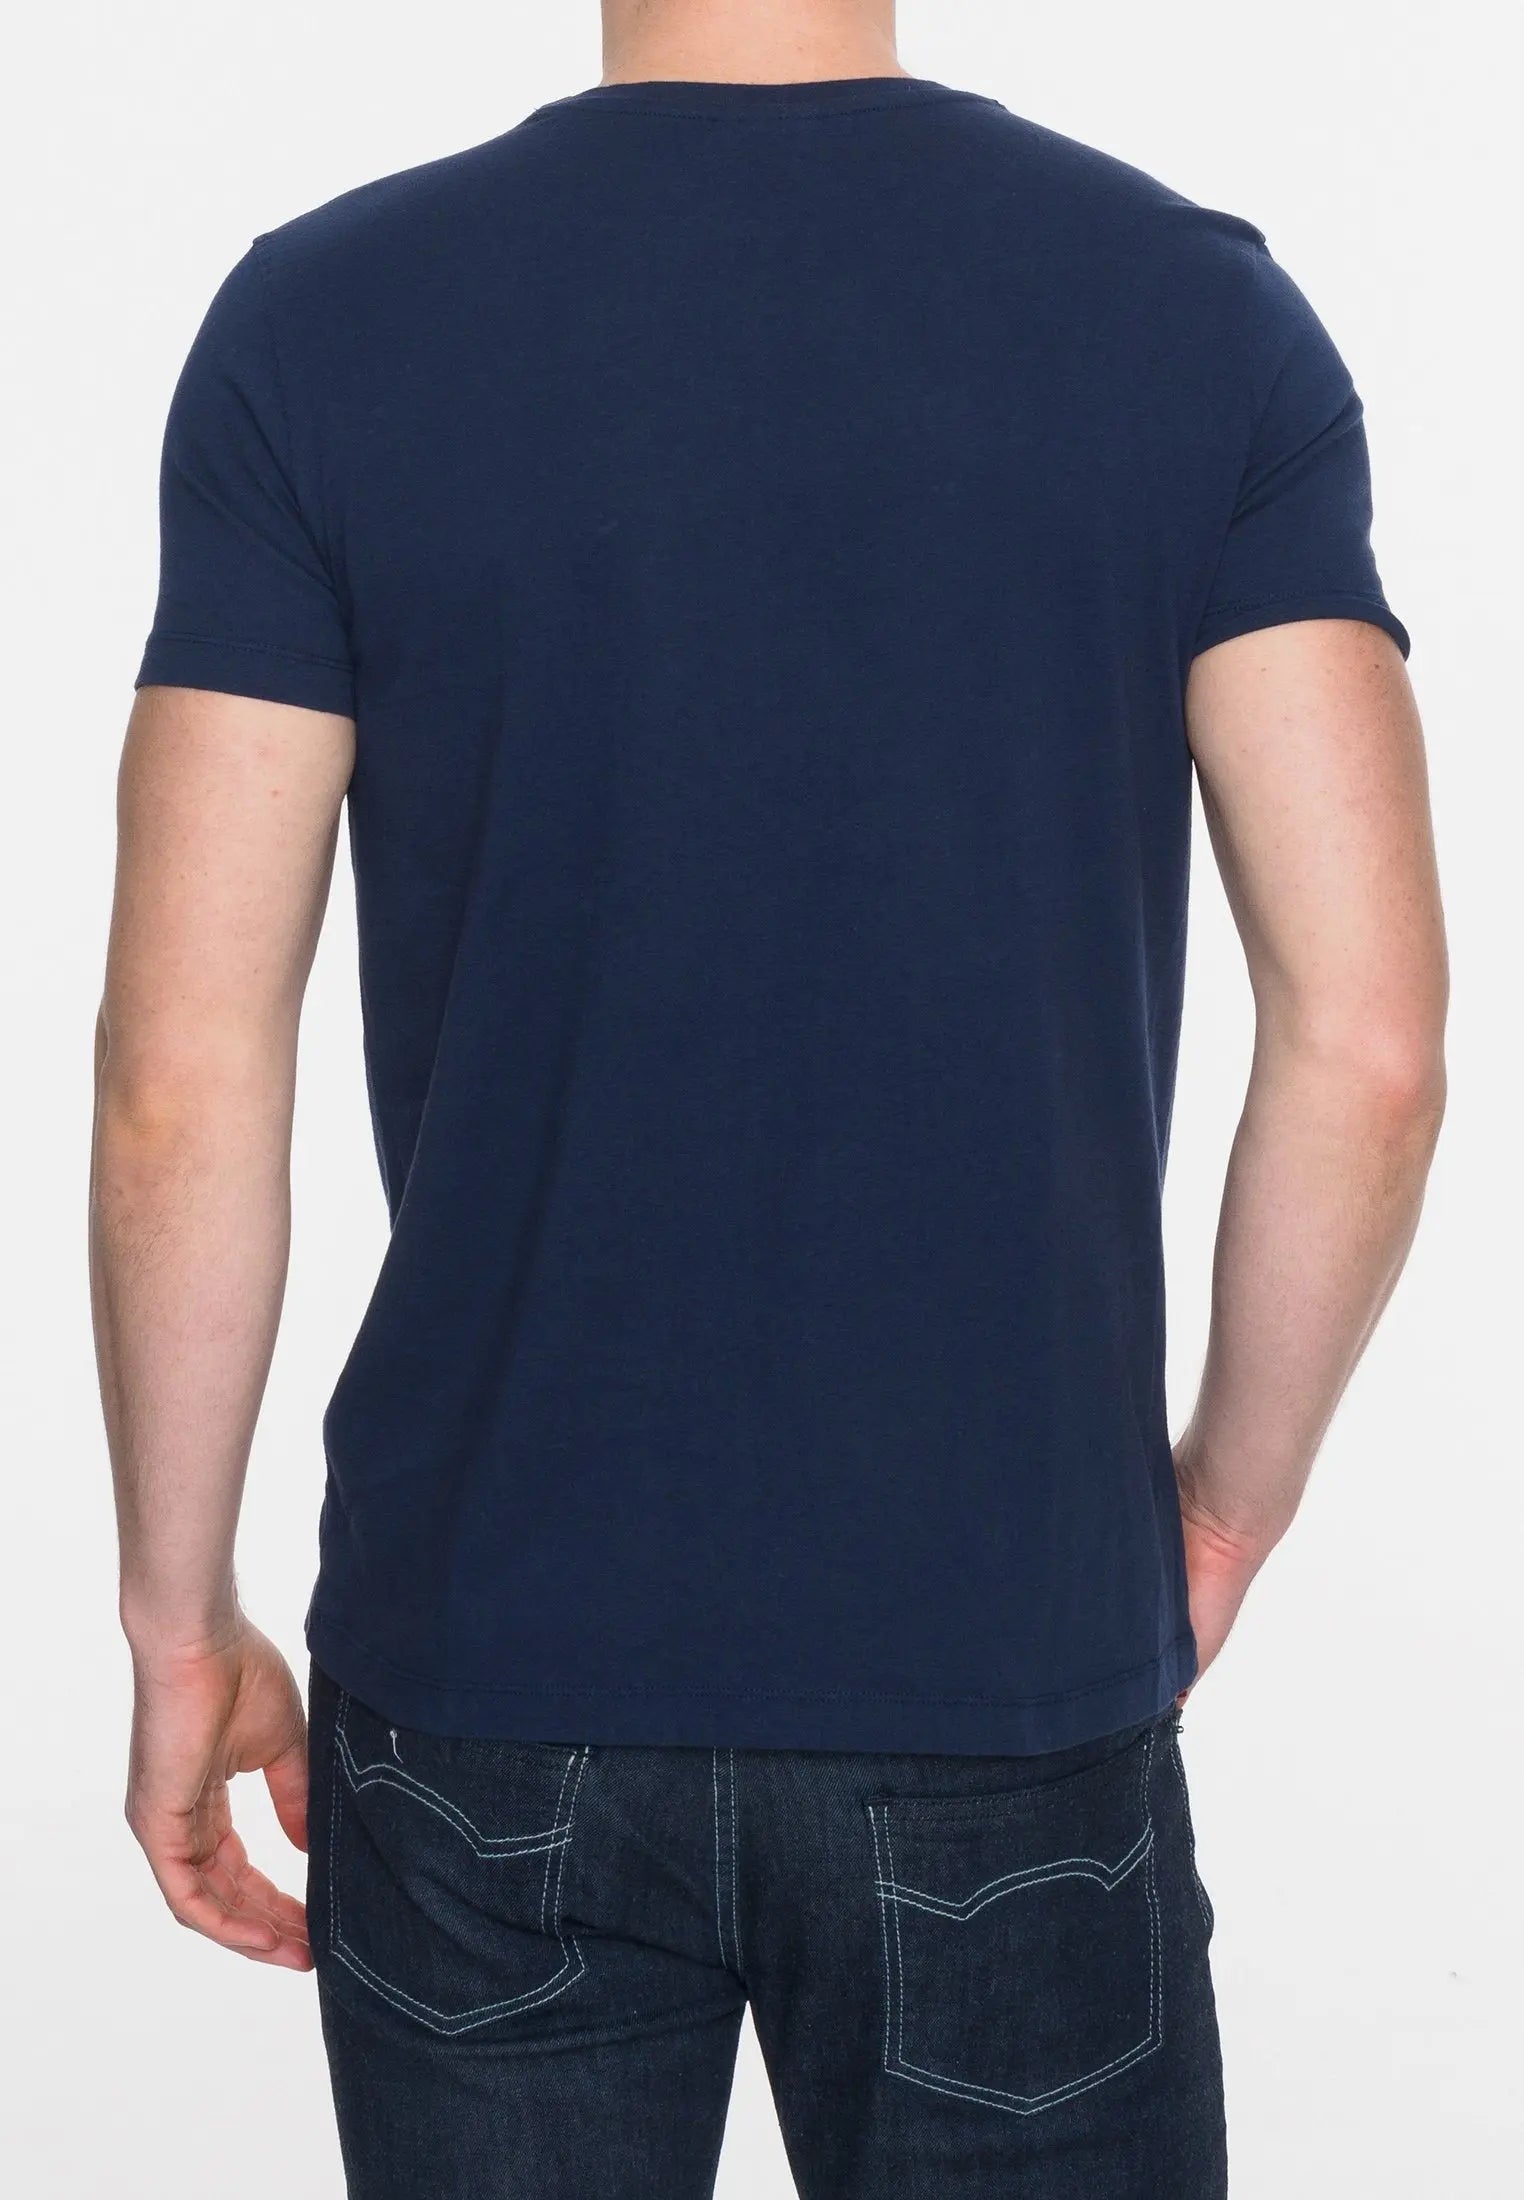 Merc London Granville Print T-Shirt - Navy From Woven Durham